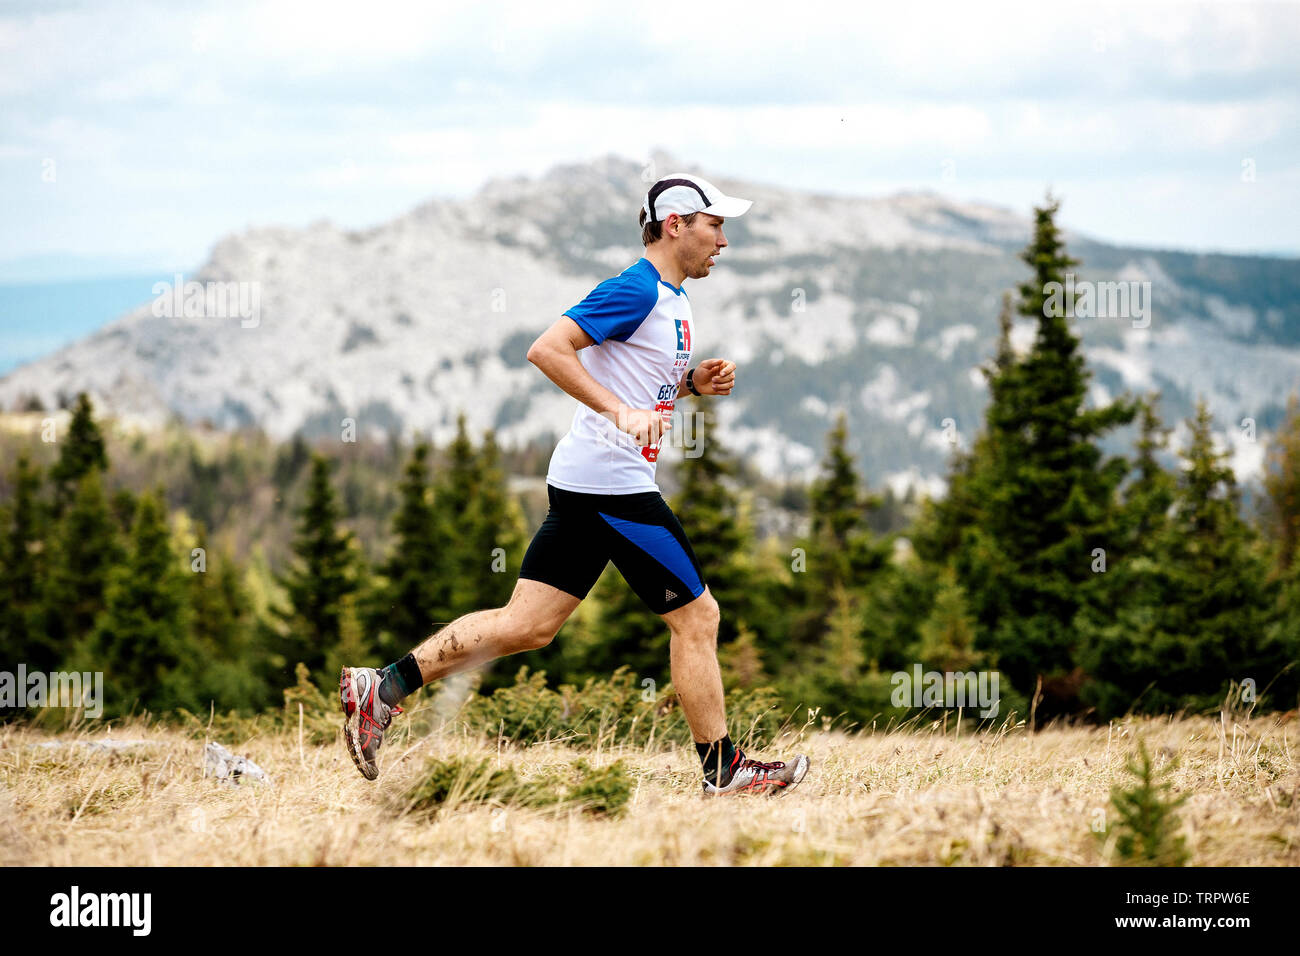 Iremel, Russia - 1 Giugno 2019: maschio runner sentiero in esecuzione sullo sfondo la foresta e la montagna nella maratona sane come le alci Foto Stock